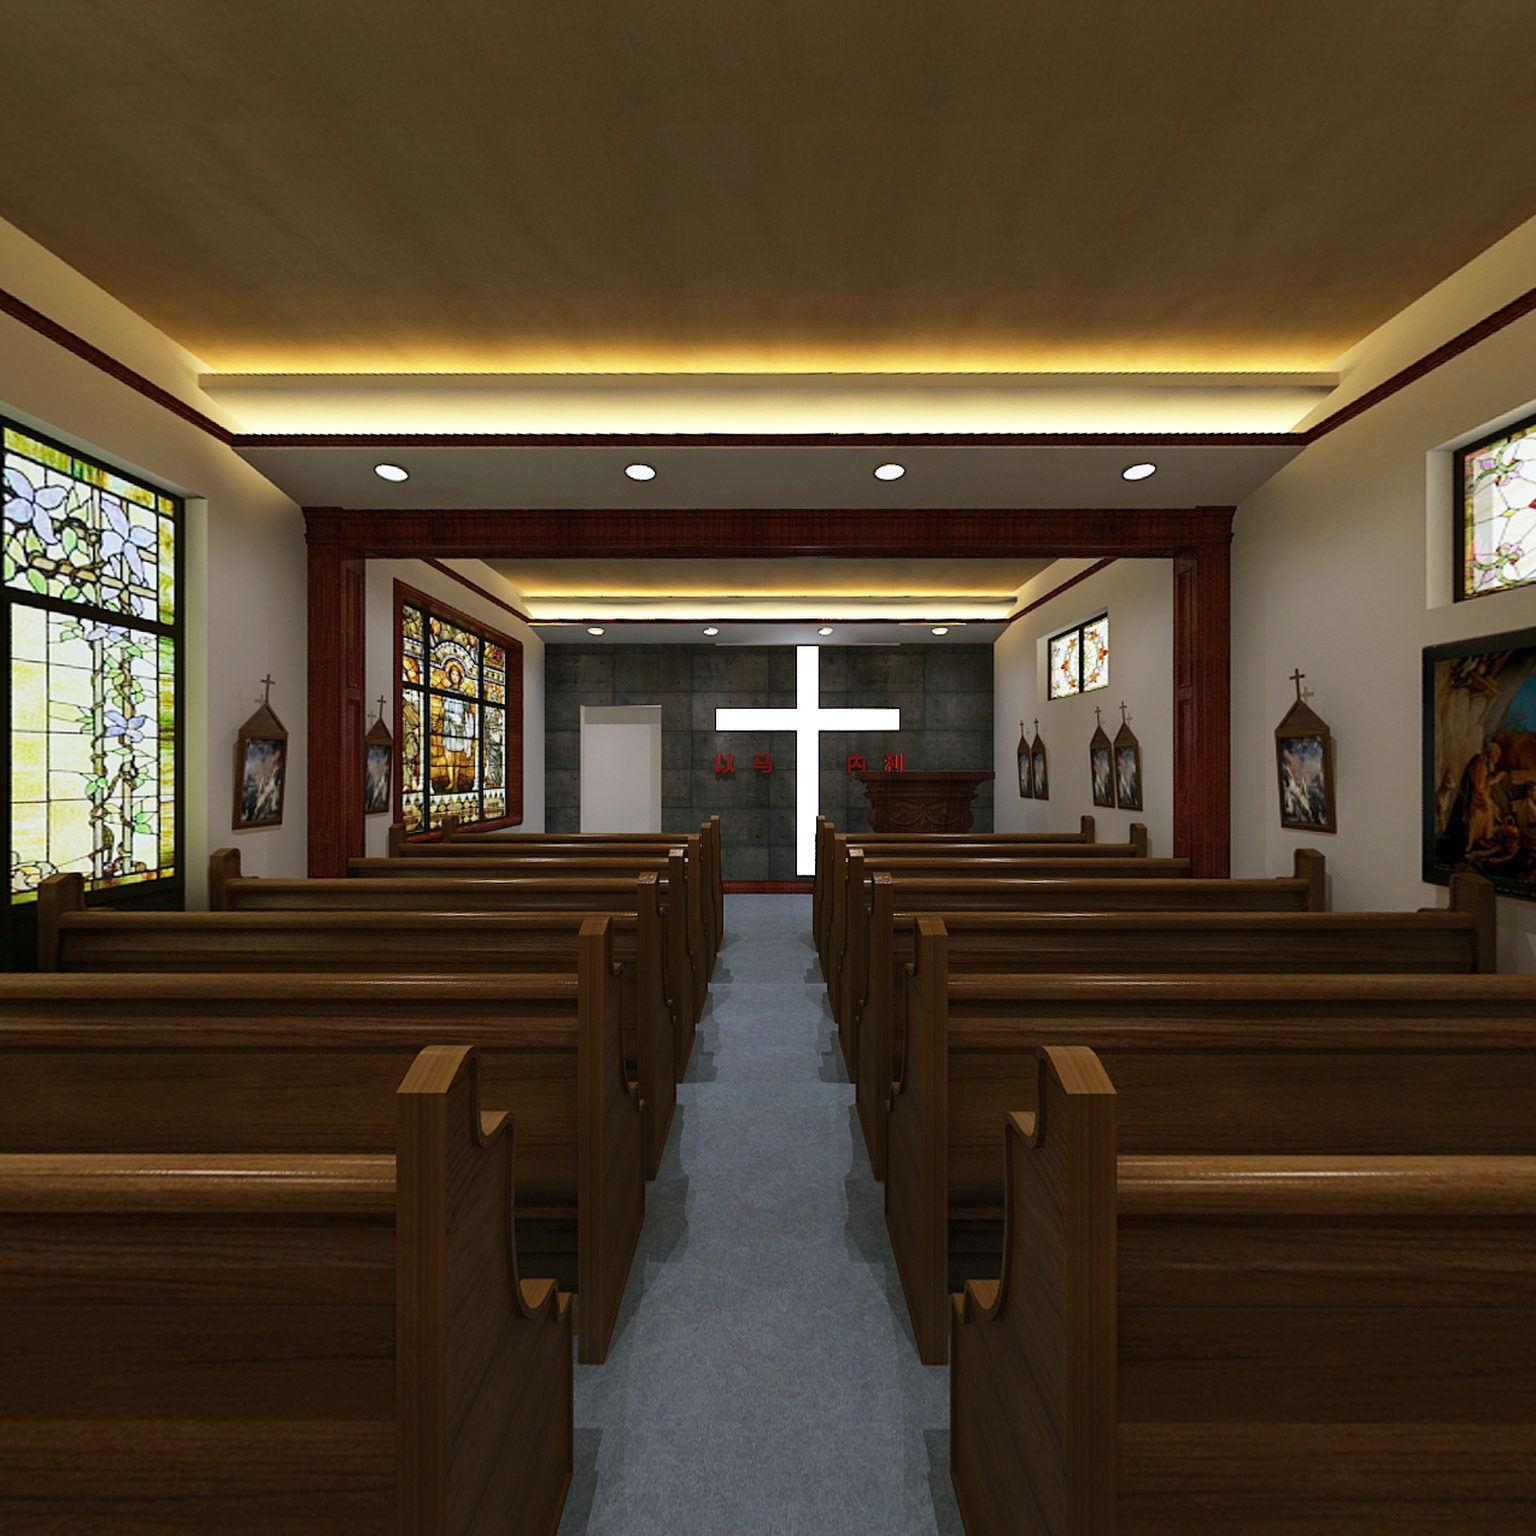 教堂内部装修效果图图片